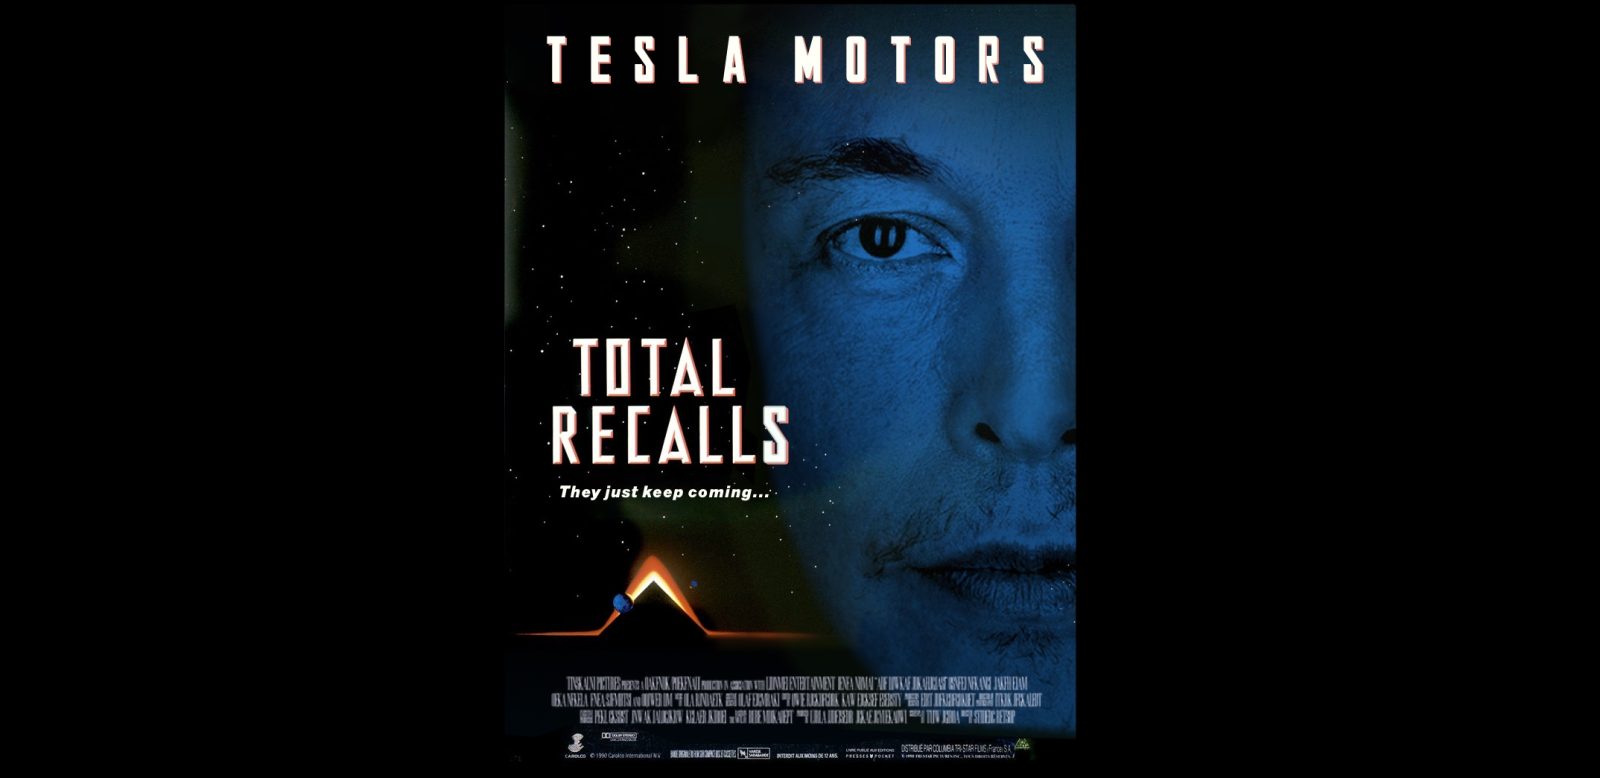 Tesla Toral Recall